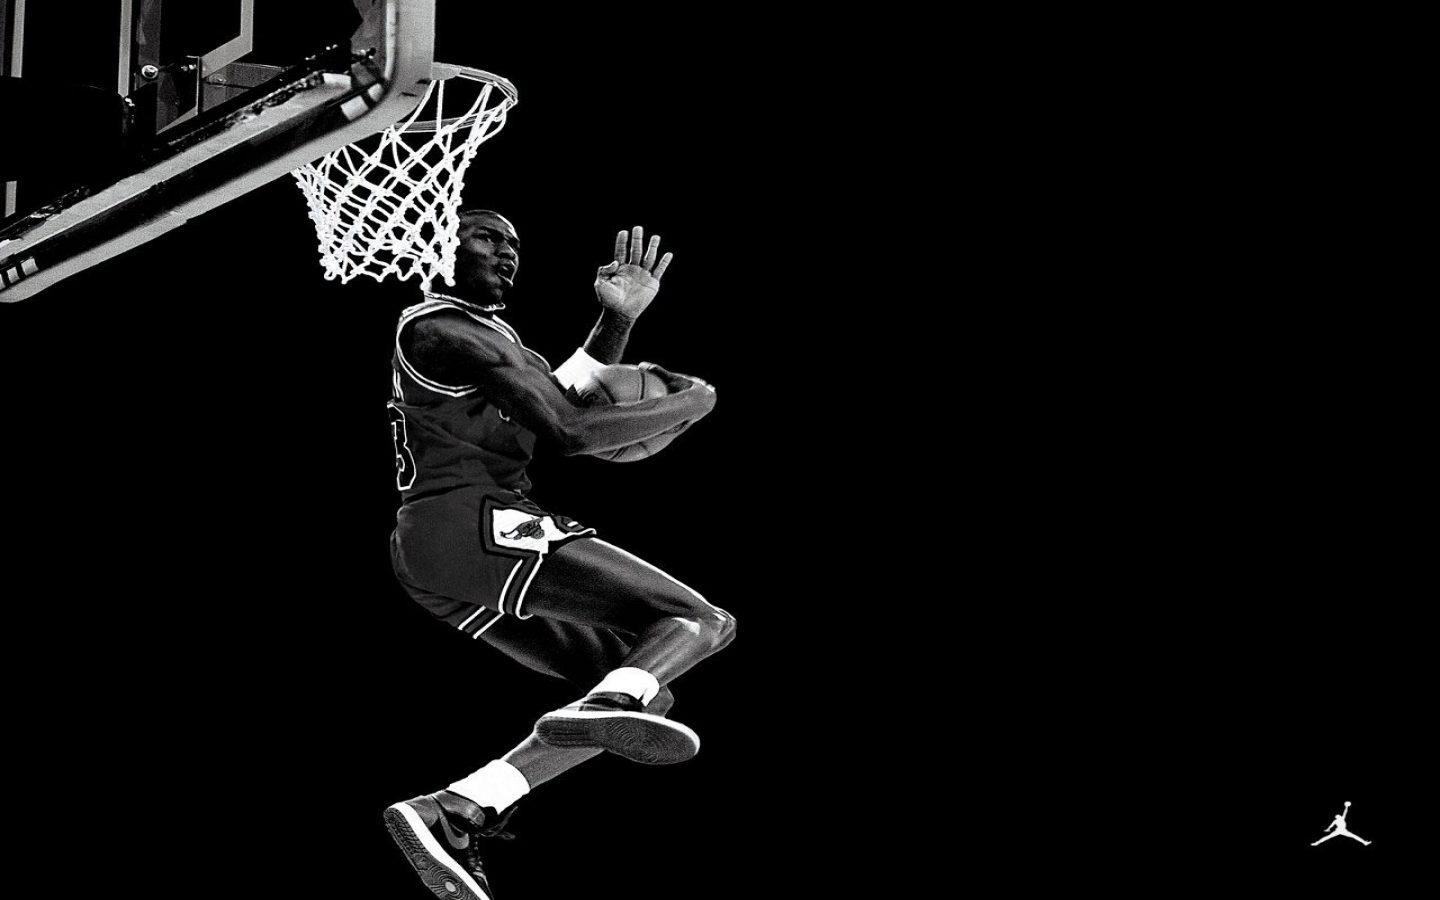  wallpaper de Michael Jordan machacando a 1440x900 Fotos e imagenes de